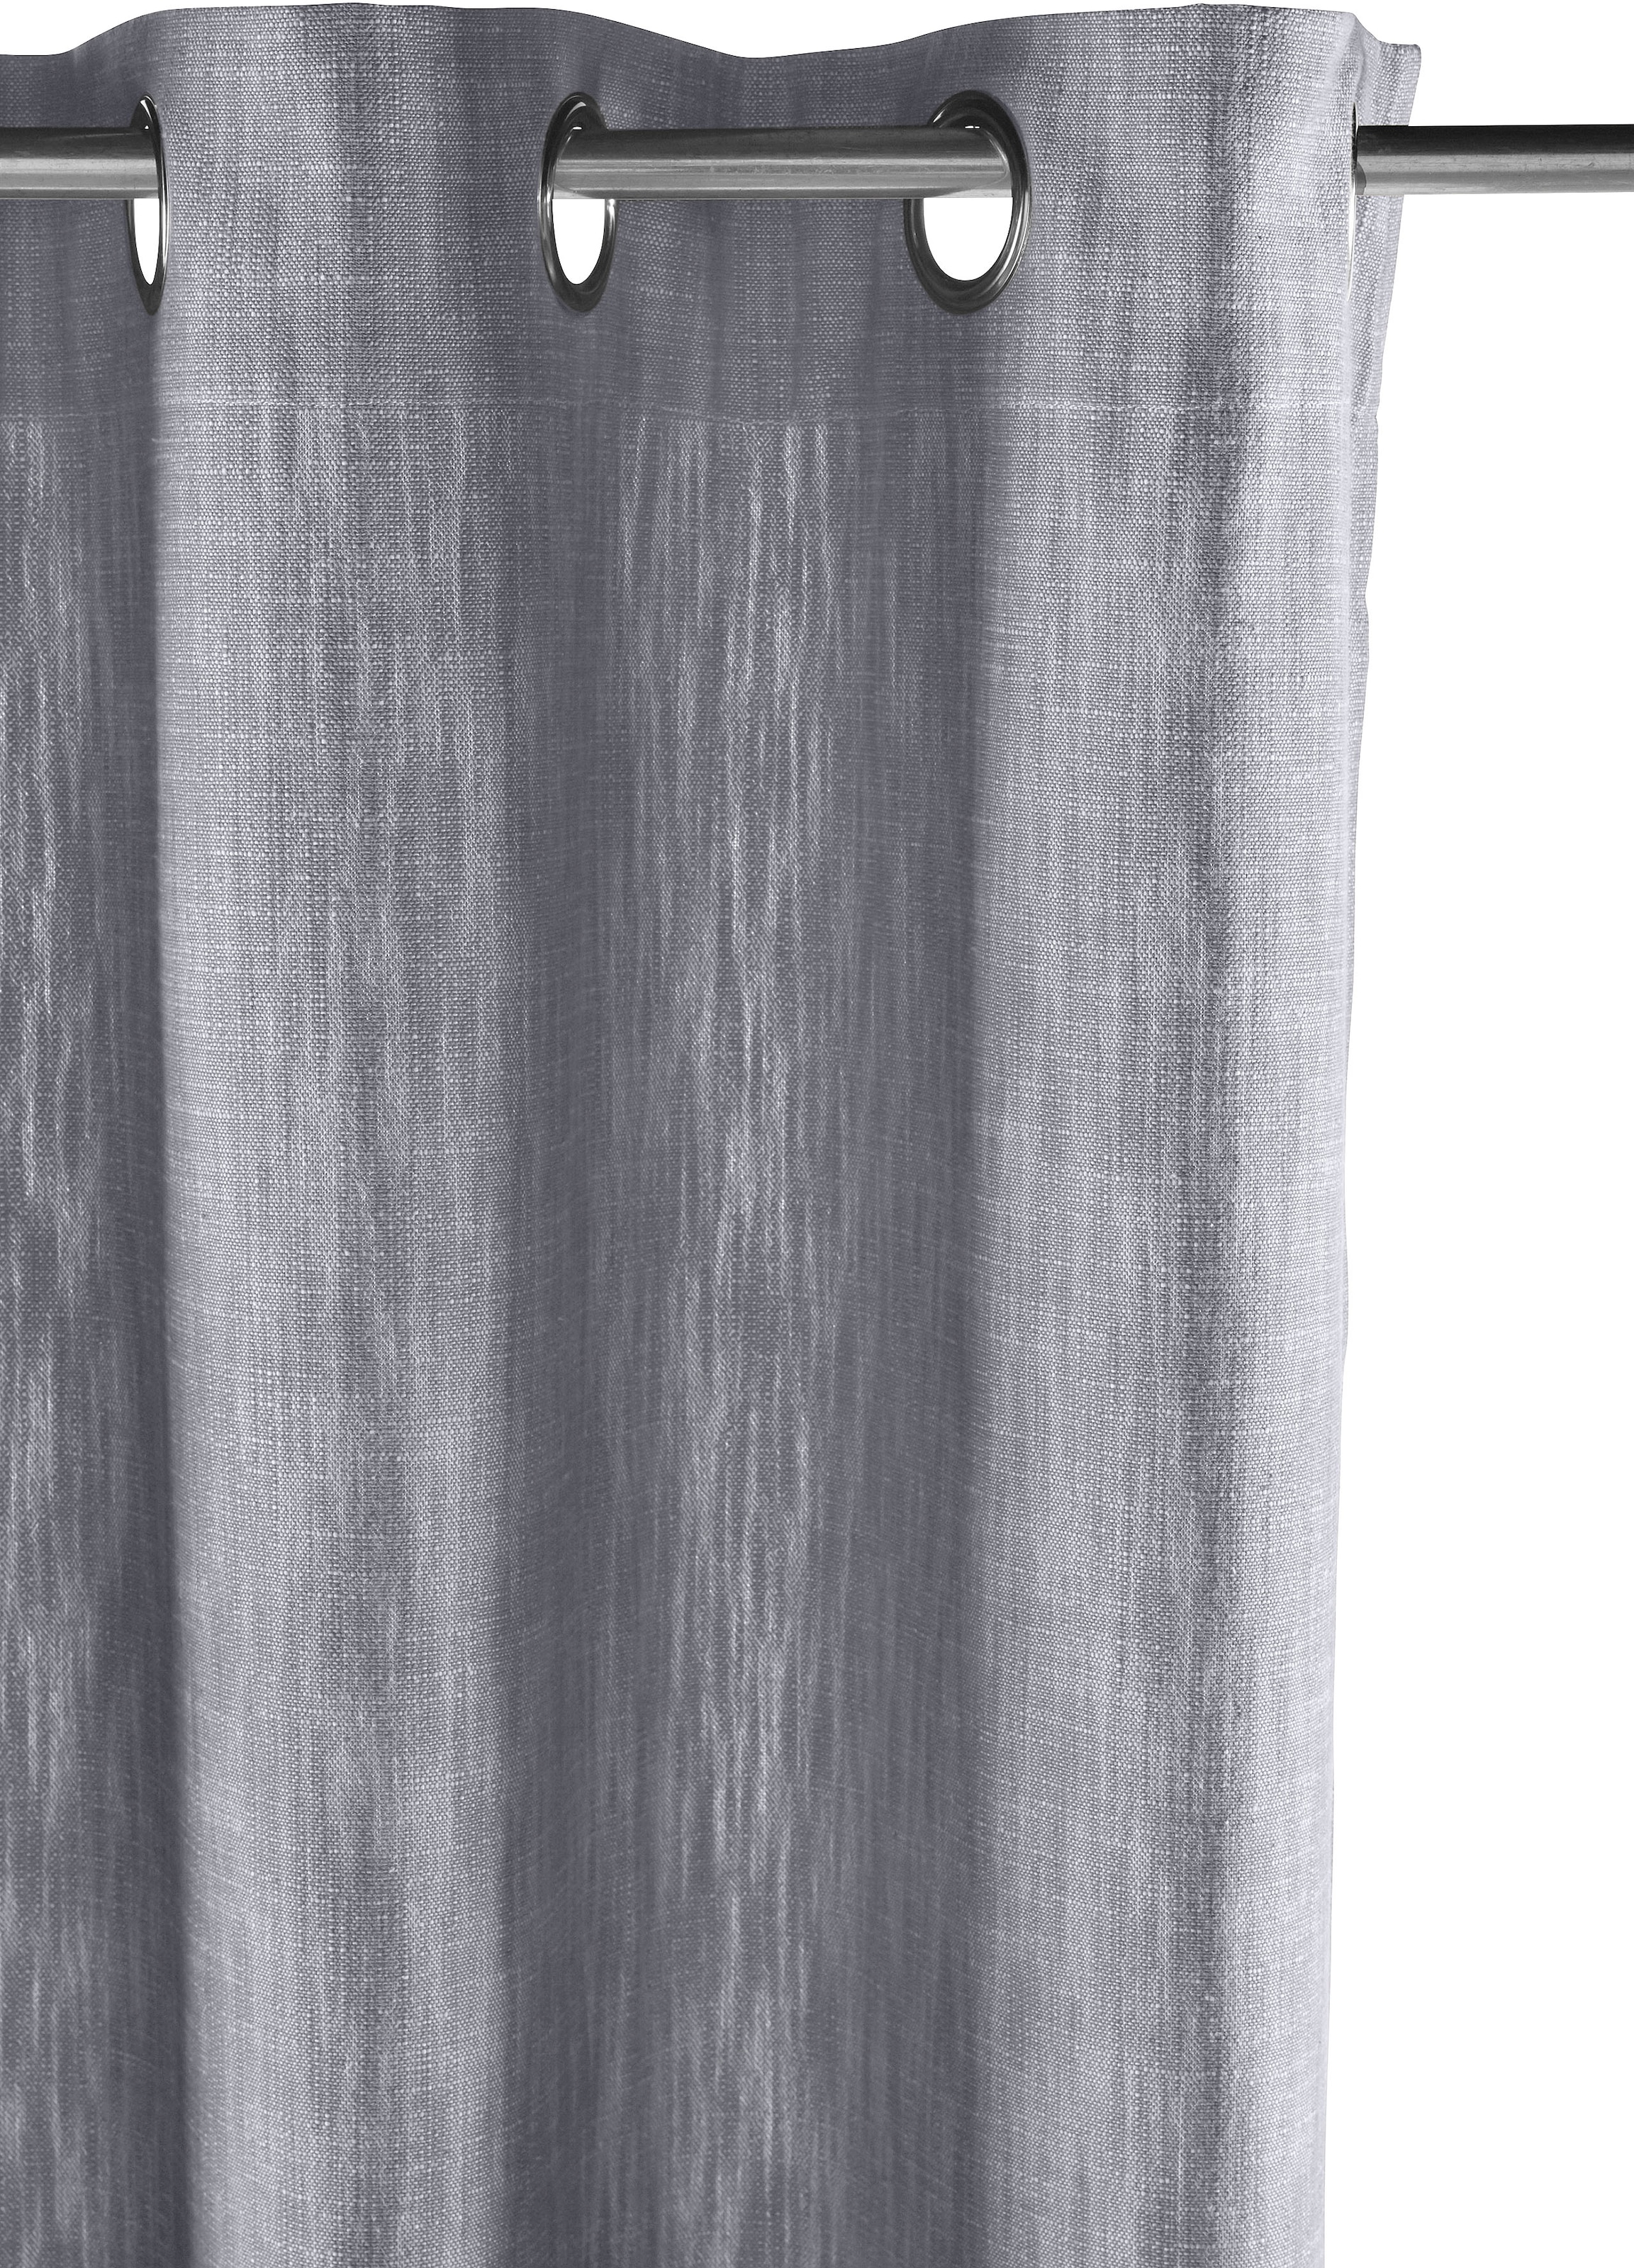 elbgestoeber Vorhang »Elbgarn«, (1 basic Bio blickdicht, Optik, Raten St.), bestellen monochrom, Leinen Baumwolle, auf